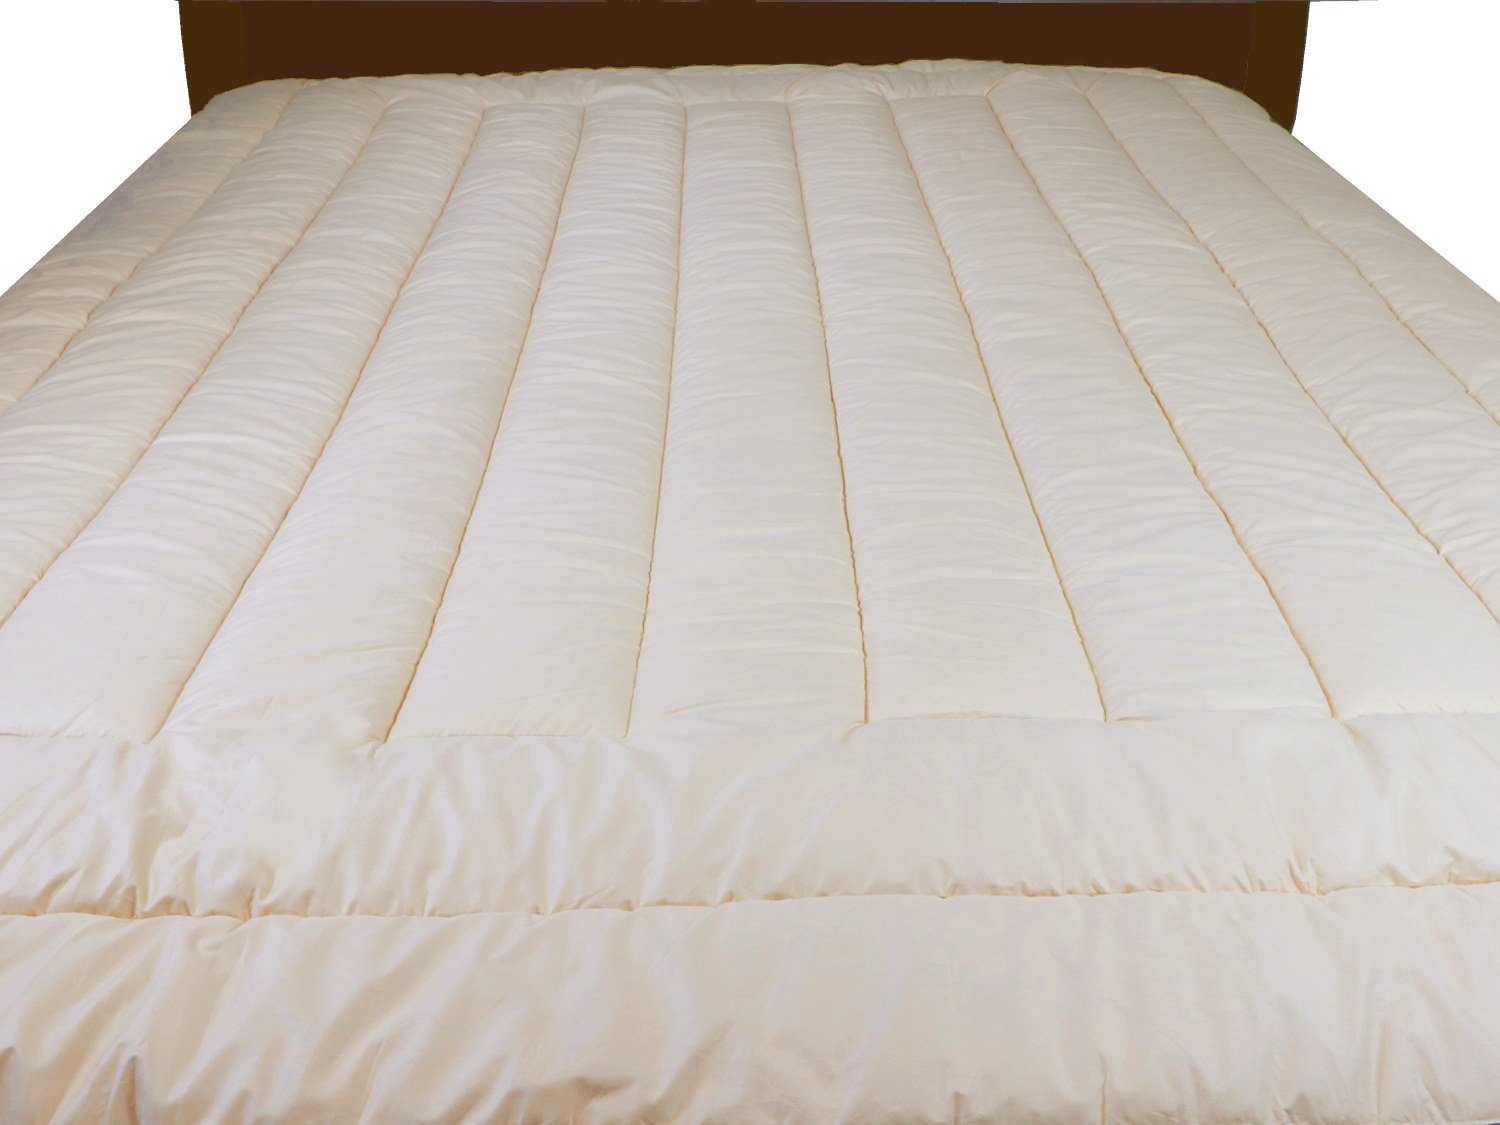 mattress topper pad 54x27x3